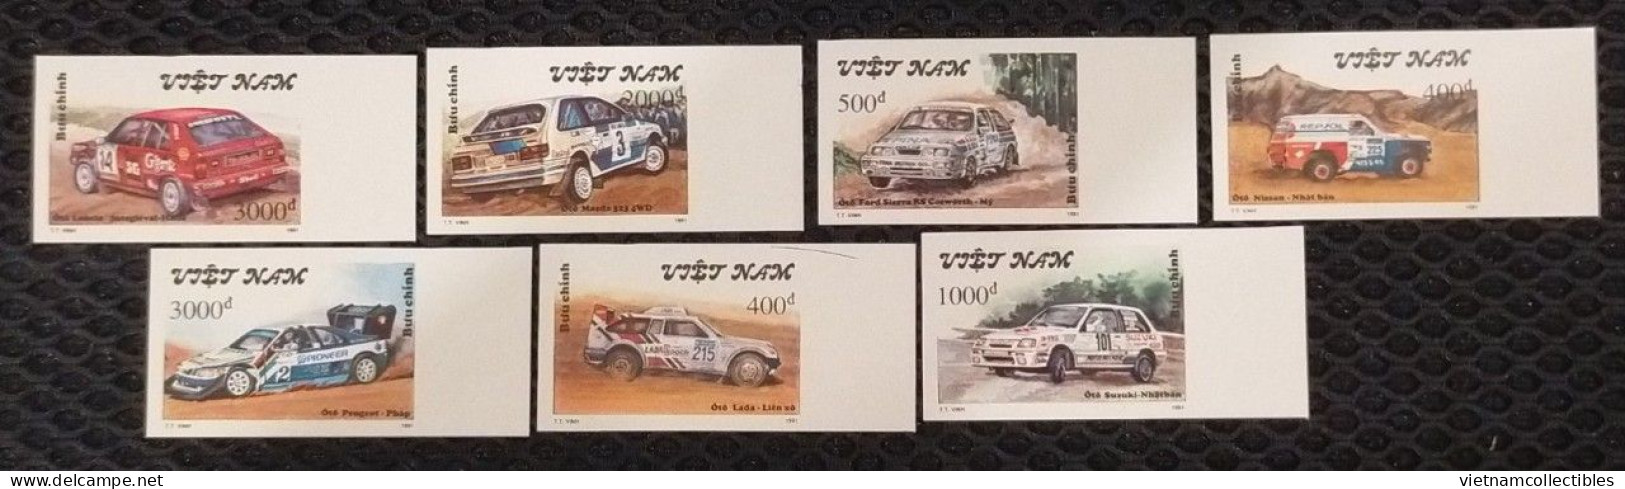 Vietnam Viet Nam MNH Imperf Stamps 1991 : Rally Cars / Car (Ms621) - Vietnam